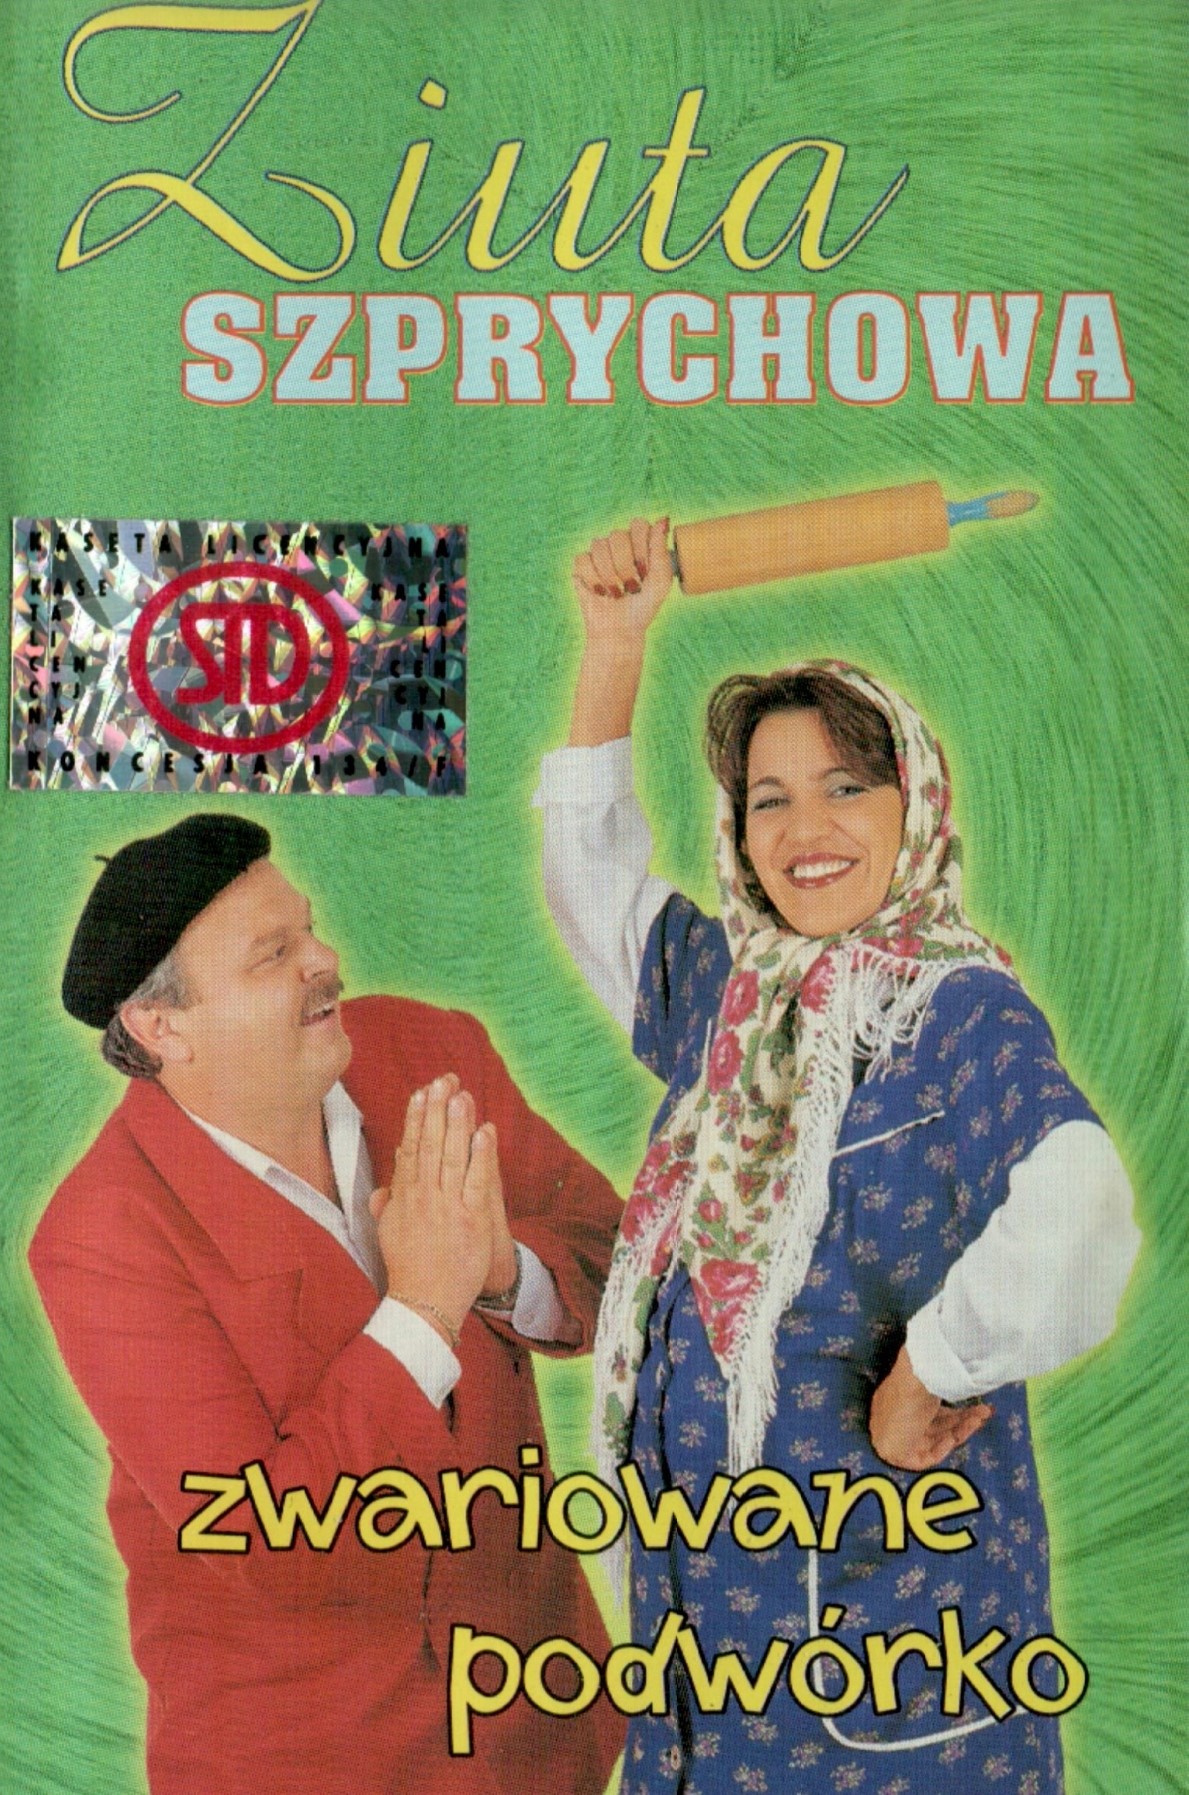 Ziuta Szprychowa - Zwariowane Pofworko.